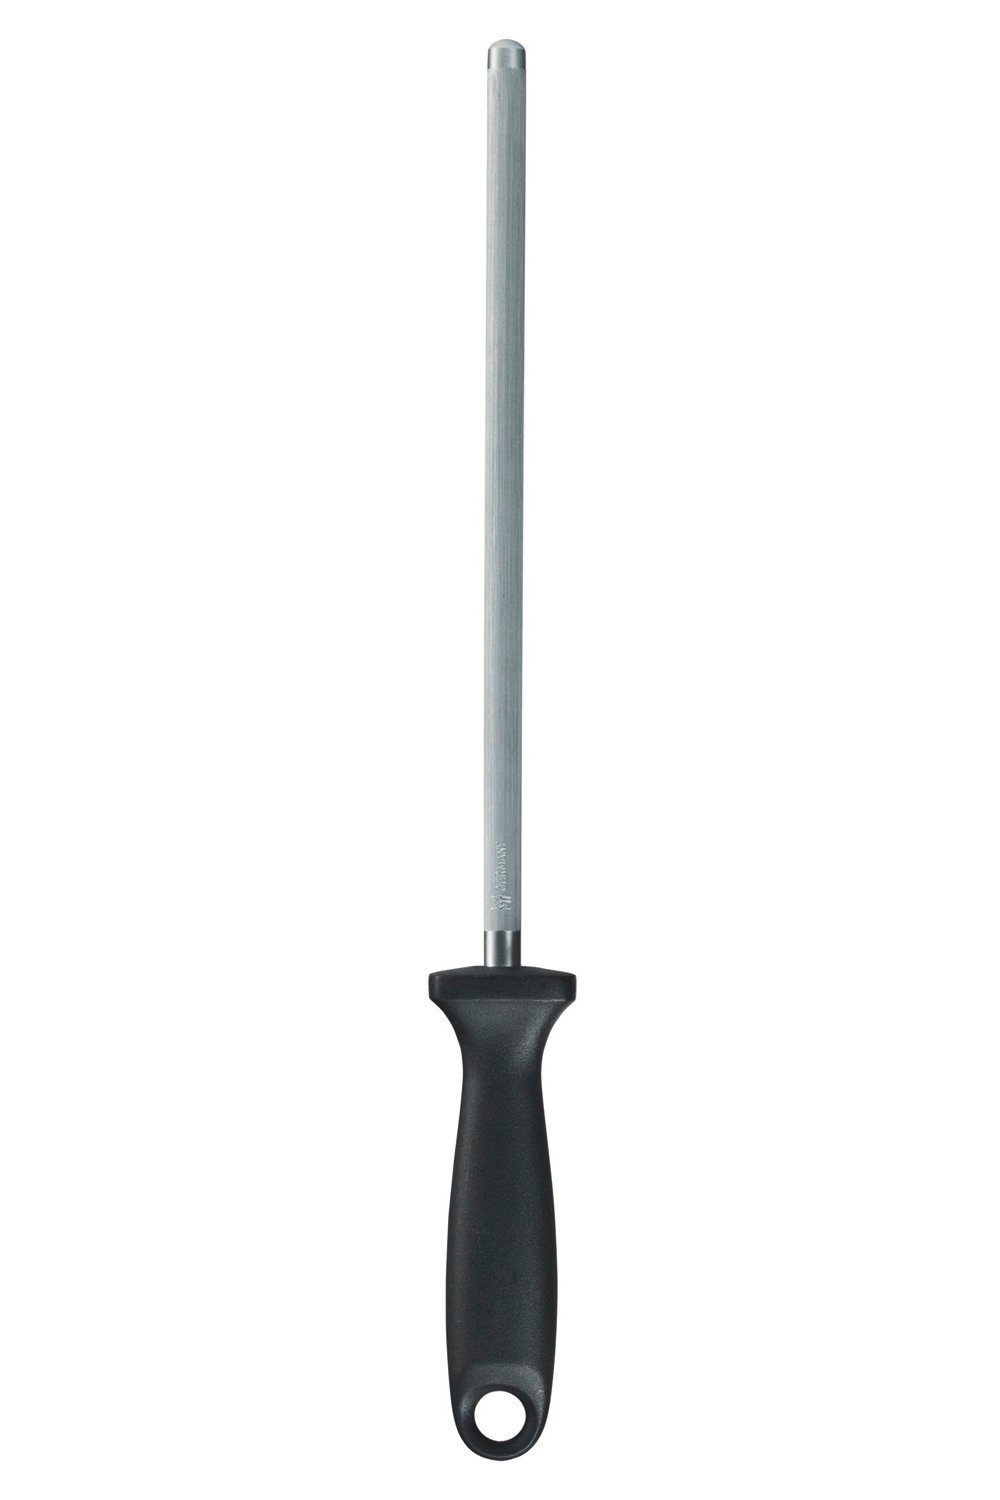 WMF Wetzstahl, Länge 36 cm, Chrom-Vanadium Stahl, Kunststoff, für Messer mit geradem Schliff, Made in Germany